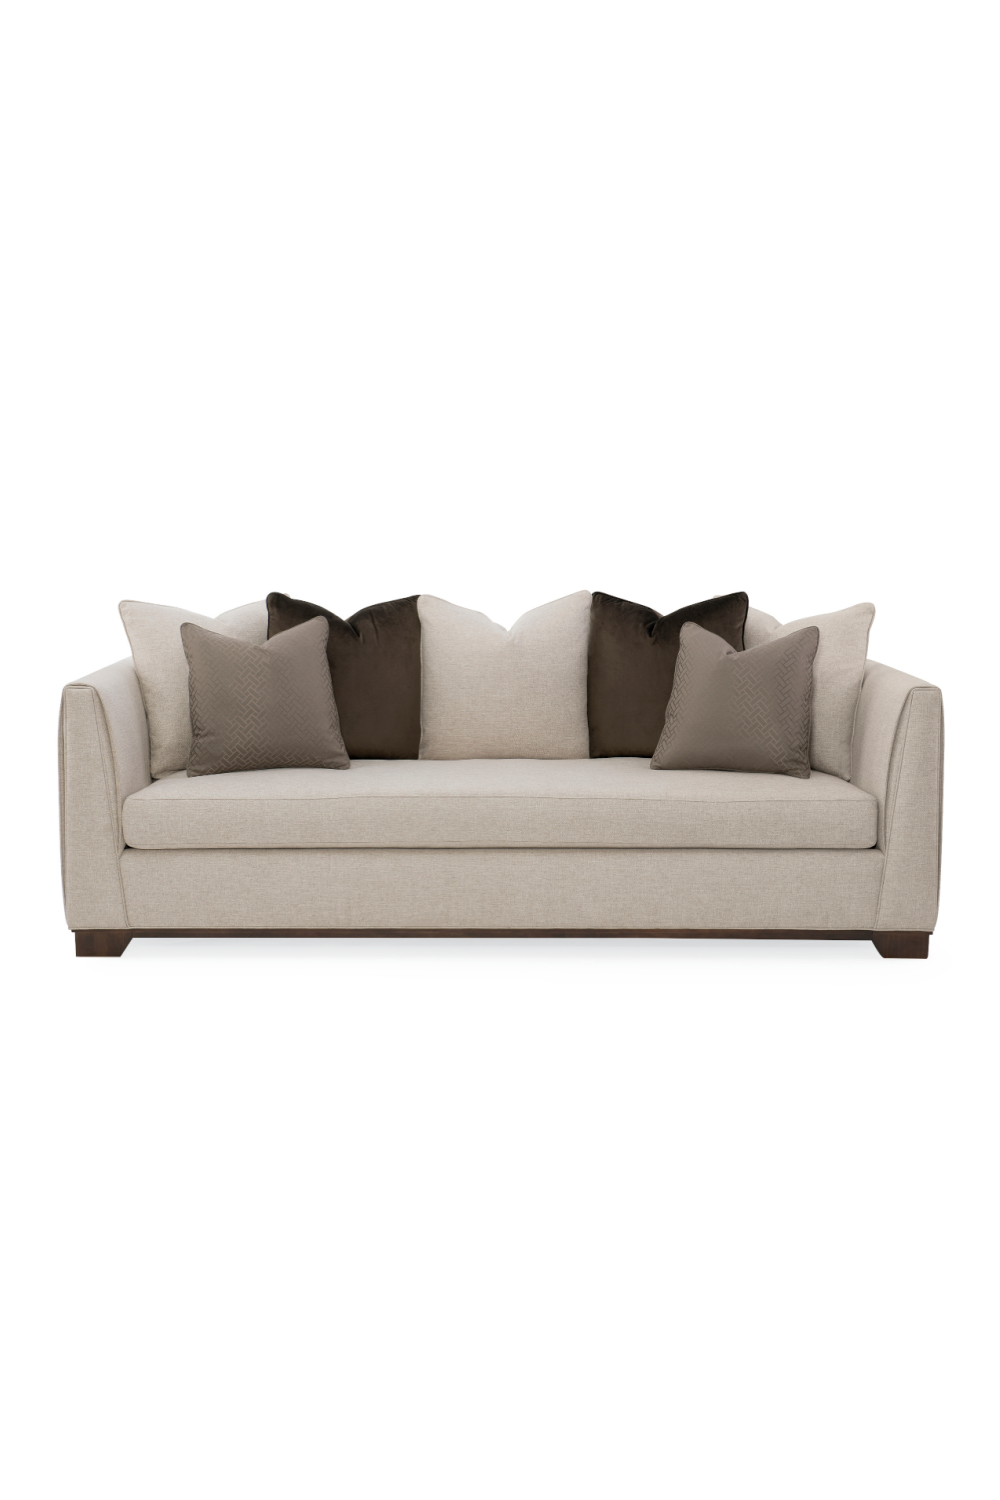 Neutral-Toned Sofa | Caracole Moderne | Oroa.com